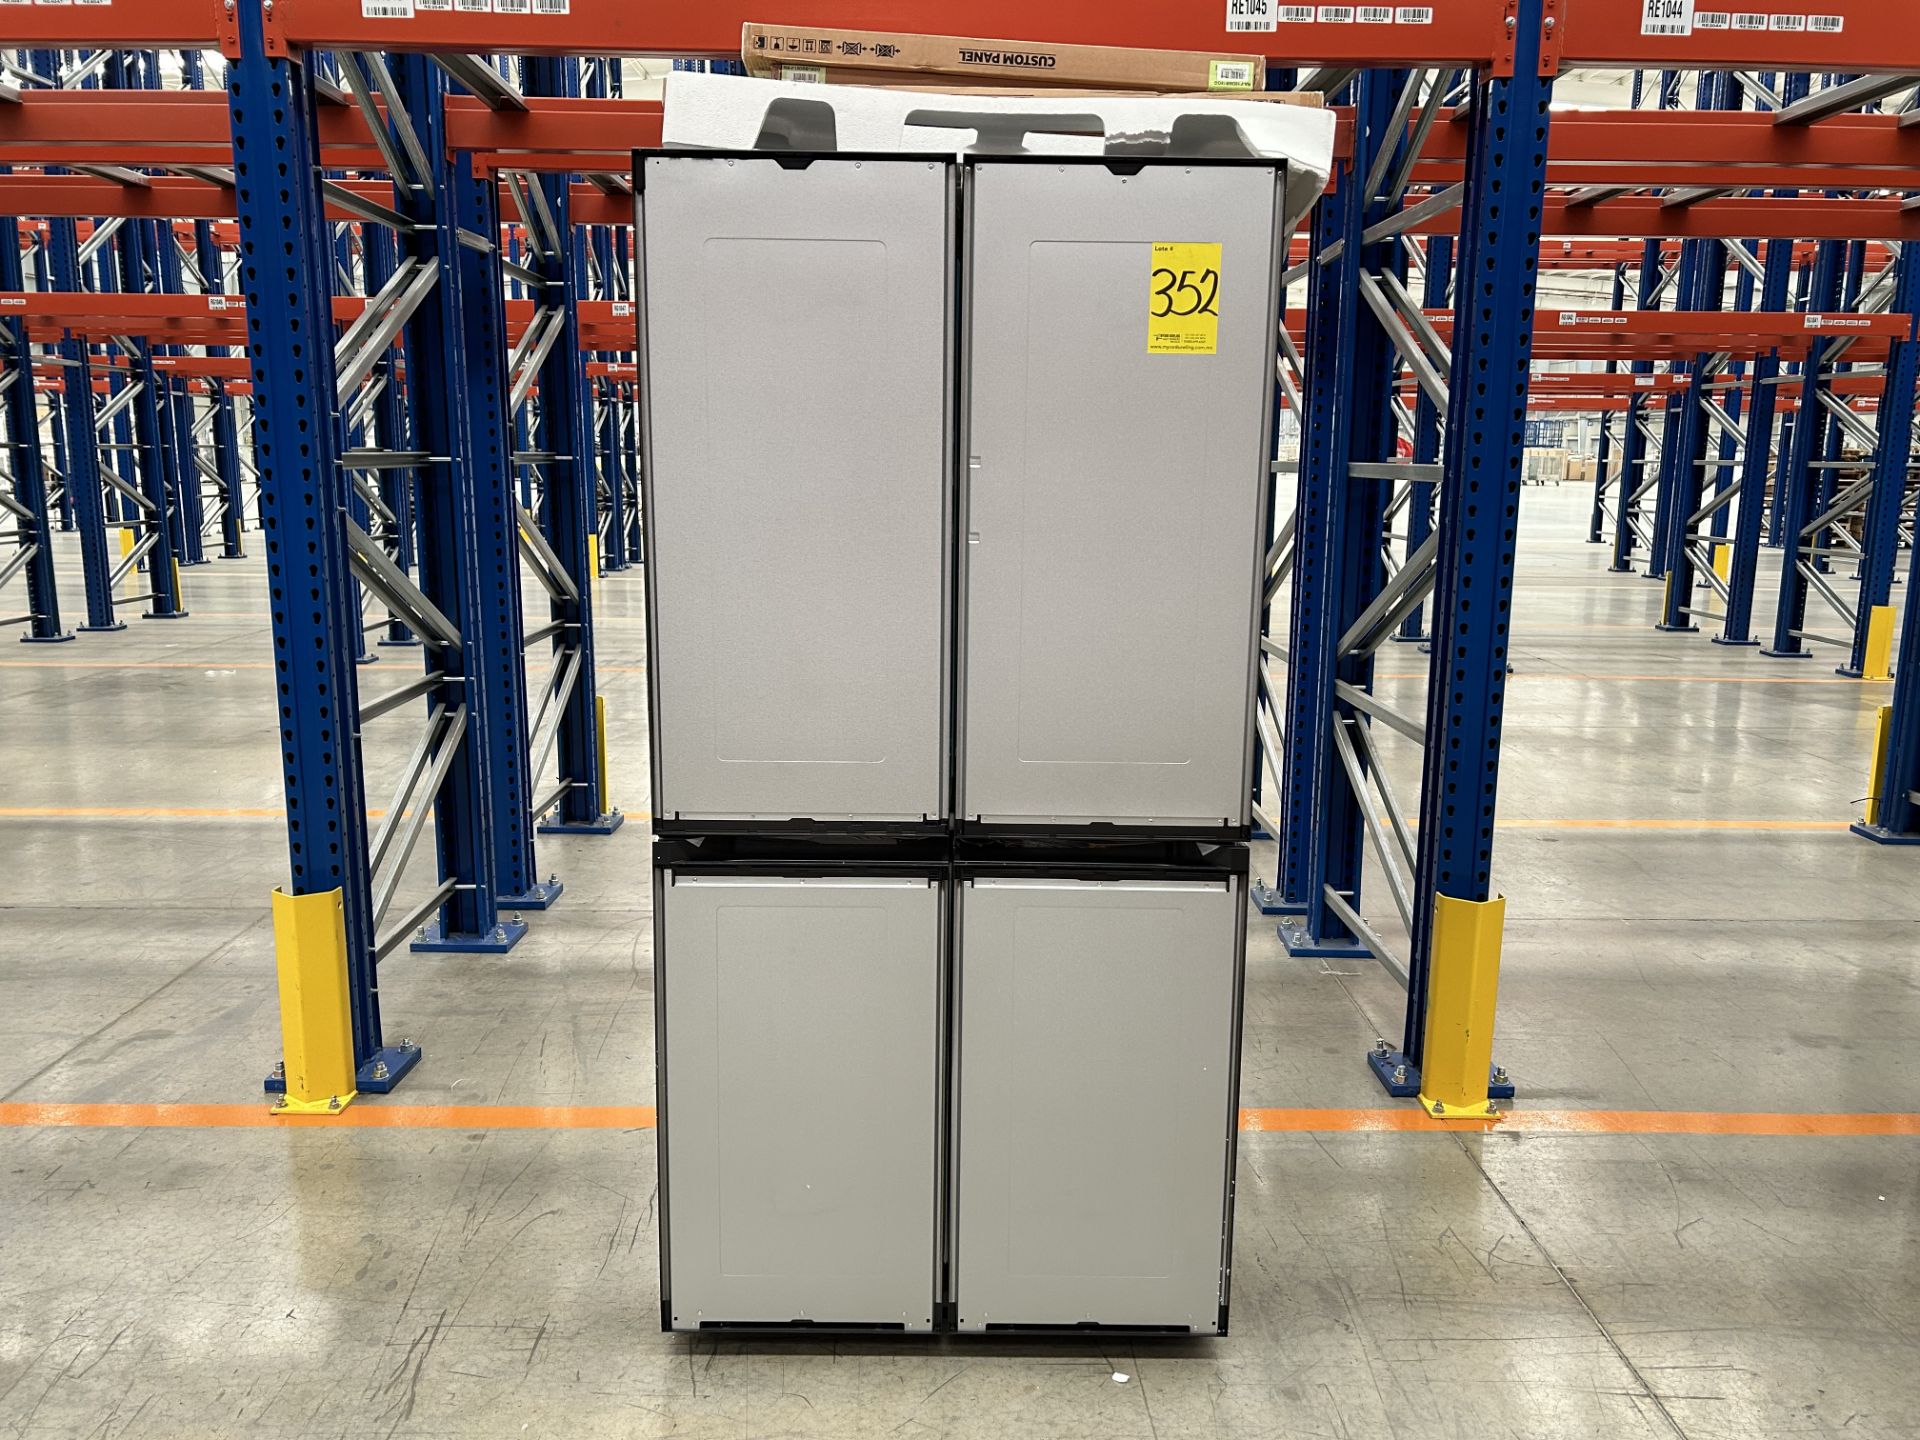 (NUEVO) Lote de 1 Refrigerador Marca SAMSUNG, Modelo RF29A9675AP, Serie 00081P, Color GRIS - Image 2 of 6